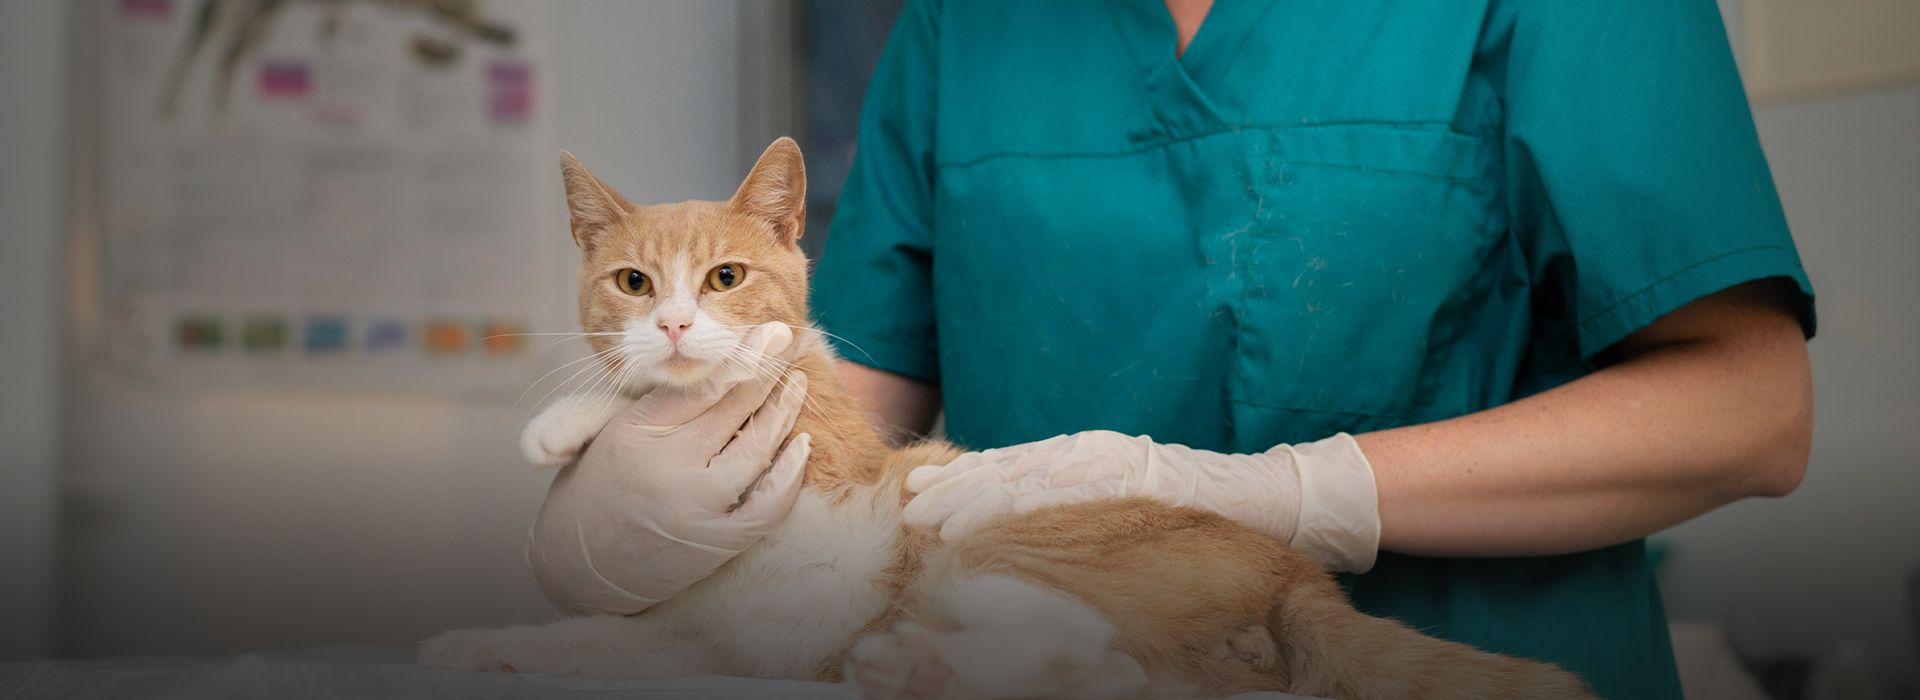 Veterinarian taking care of cat